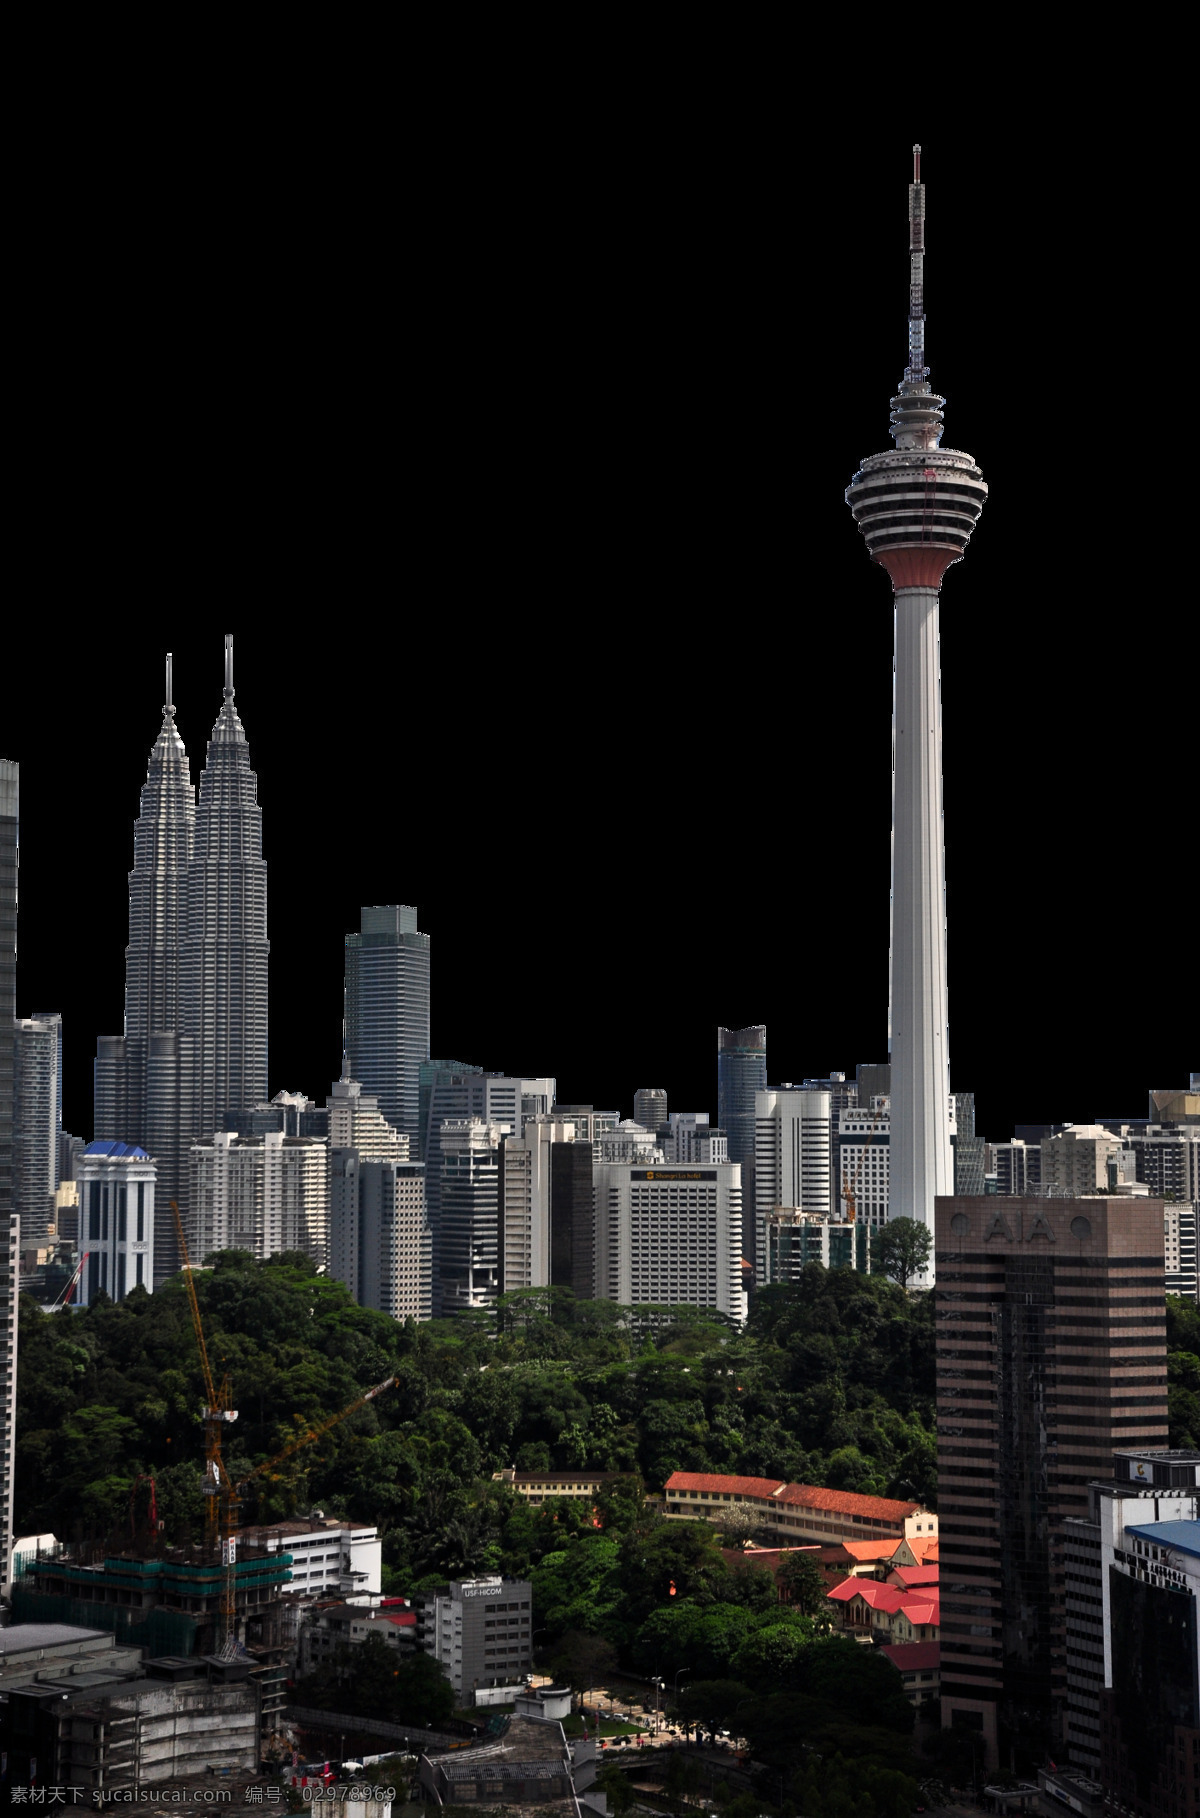 吉隆坡 电视塔 抠 图 环境设计 建筑群 建筑设计 抠图 马来西亚 家居装饰素材